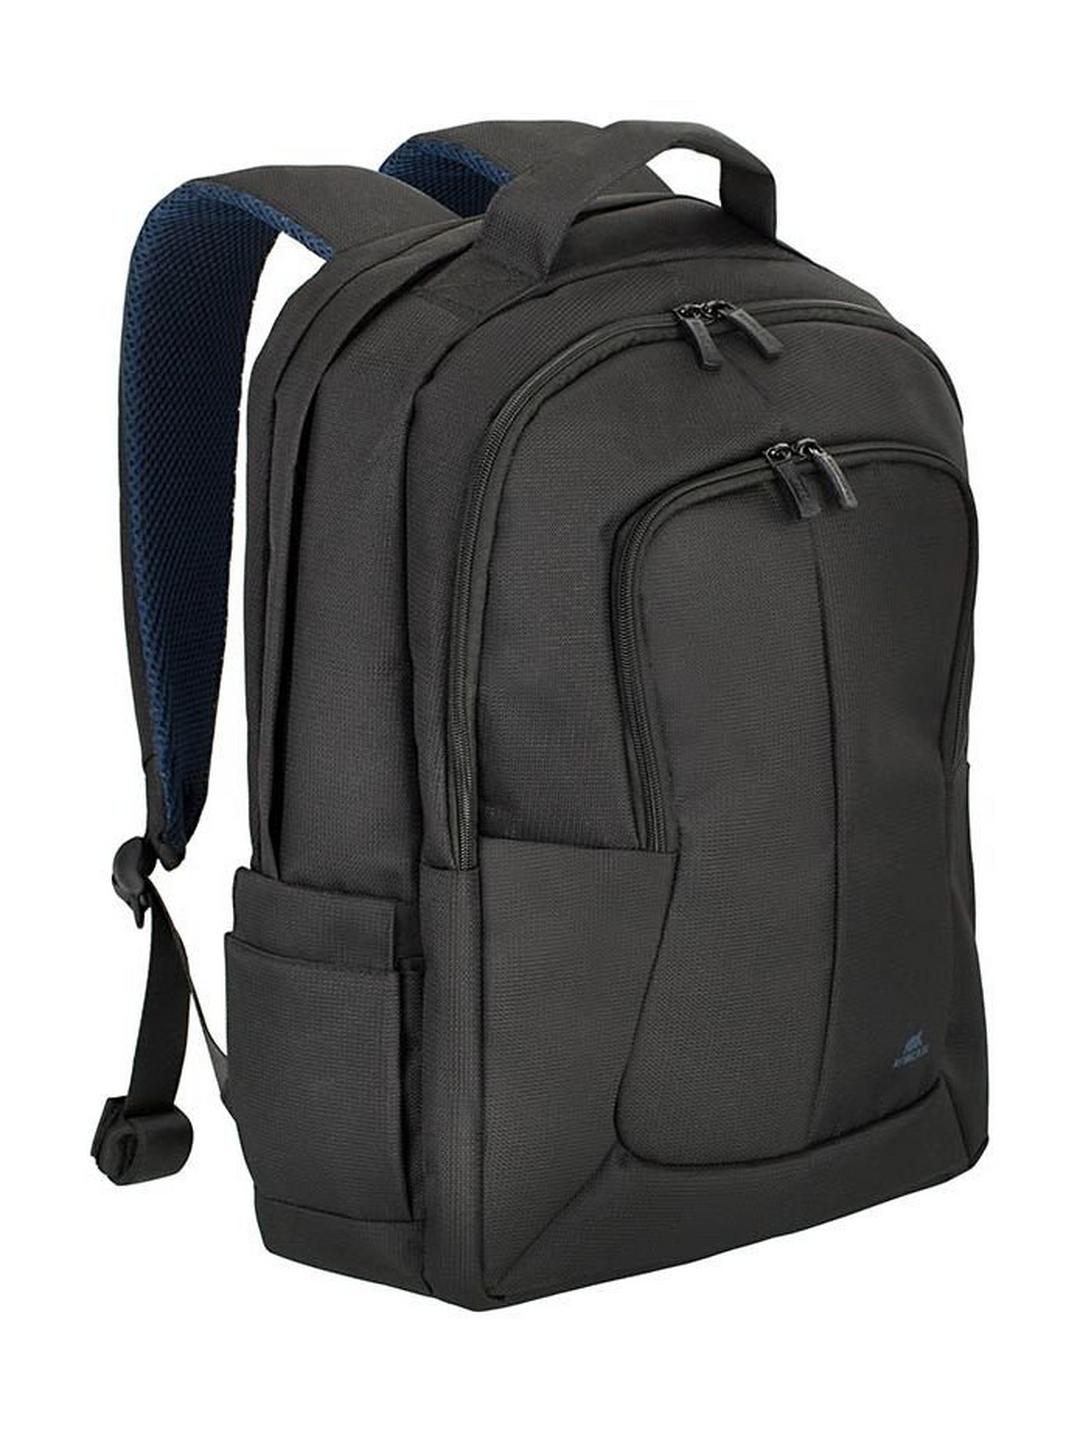 Riva Bulker Backpack For 17.3-inch Laptop (8460) - Black